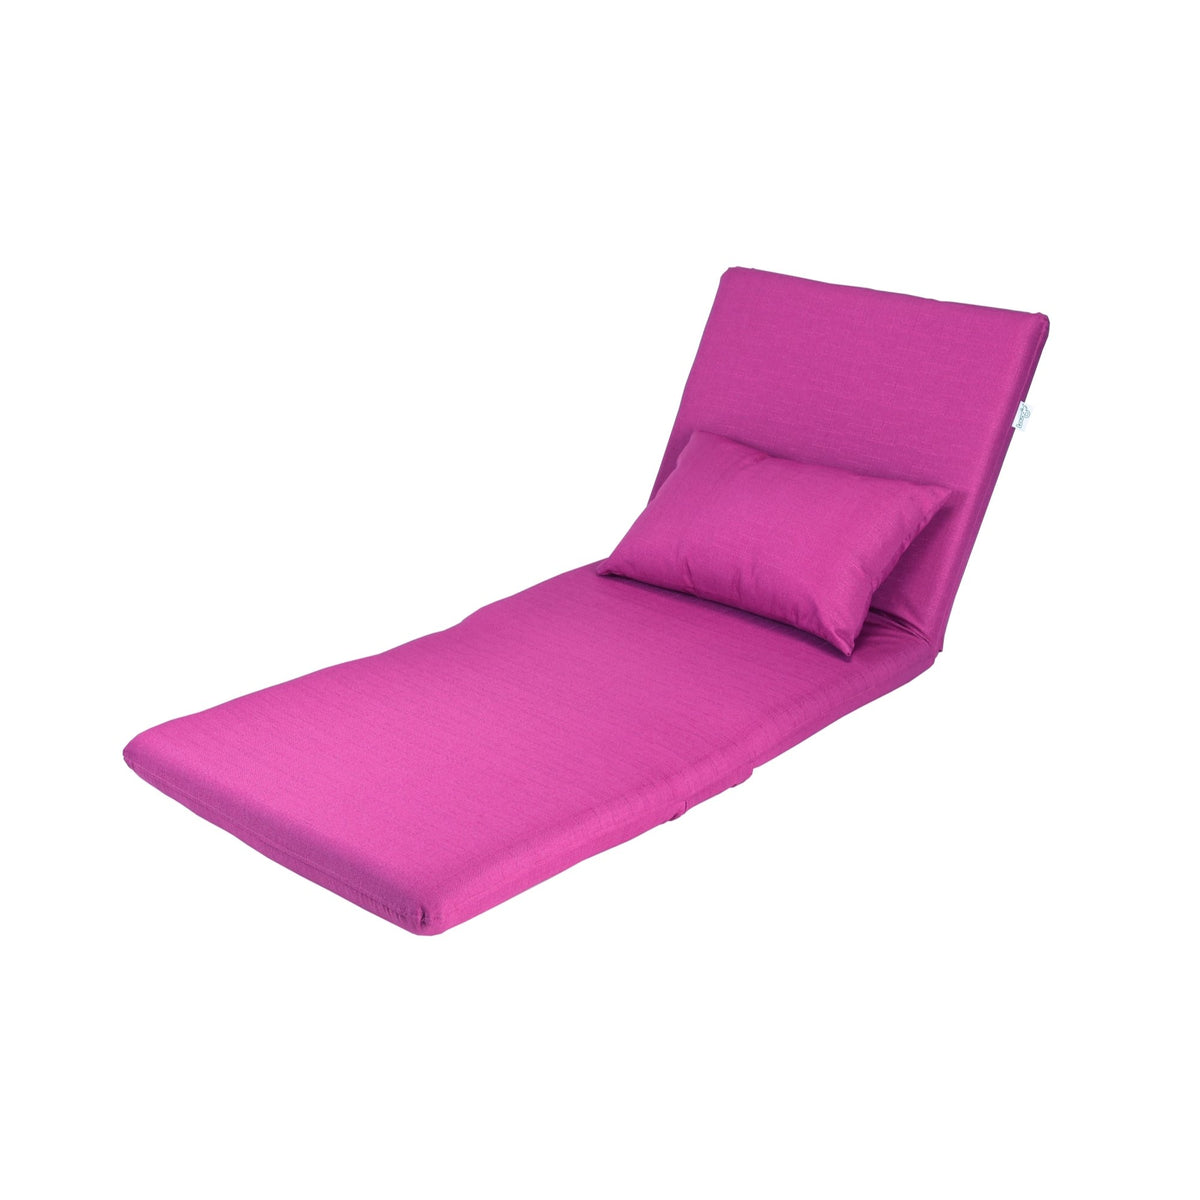 Flip Chair - Relaxie Flip Chair